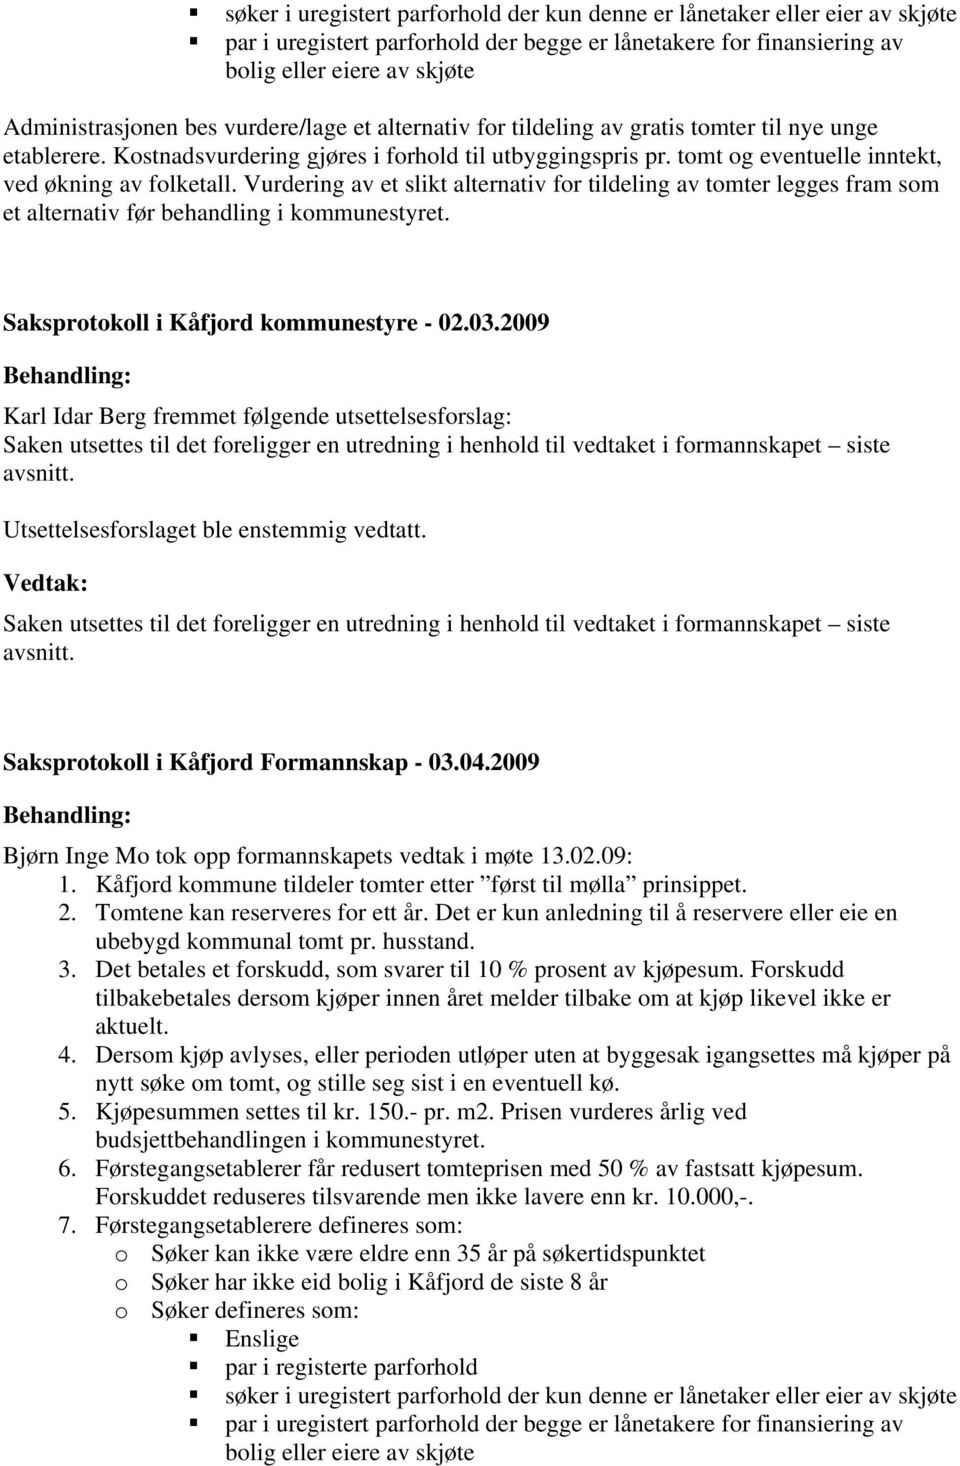 Vurdering av et slikt alternativ for tildeling av tomter legges fram som et alternativ før behandling i kommunestyret. Saksprotokoll i Kåfjord kommunestyre - 02.03.